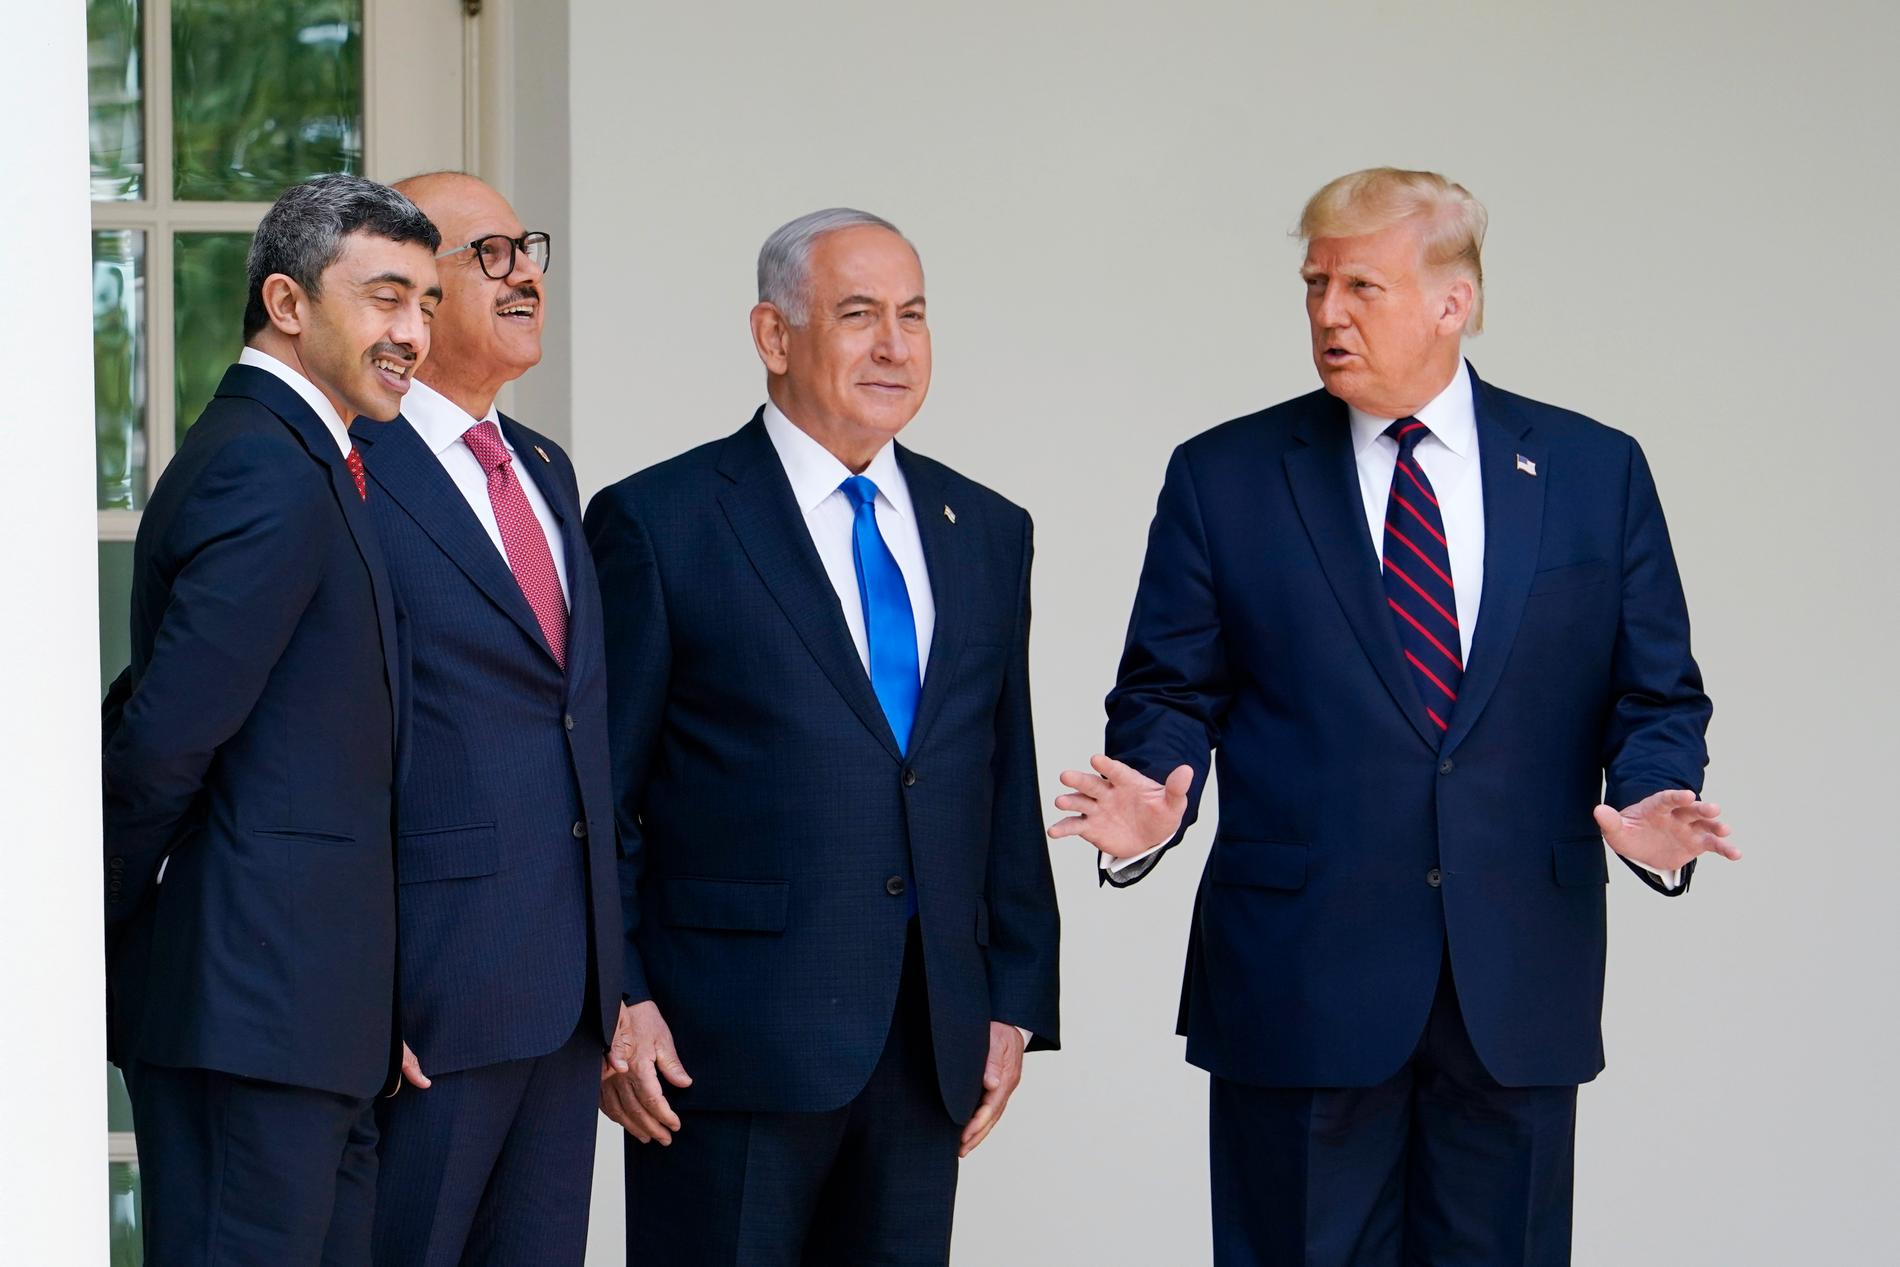 USA:s president Donald Trump och – från höger till vänster – Israels premiärminister Benjamin Netanyahu, Bahrains utrikesminister Abdullatif al-Zayani och Förenade arabemiratens utrikesminister Abdullah bin Zayed al-Nahyan på väg till ceremonin.